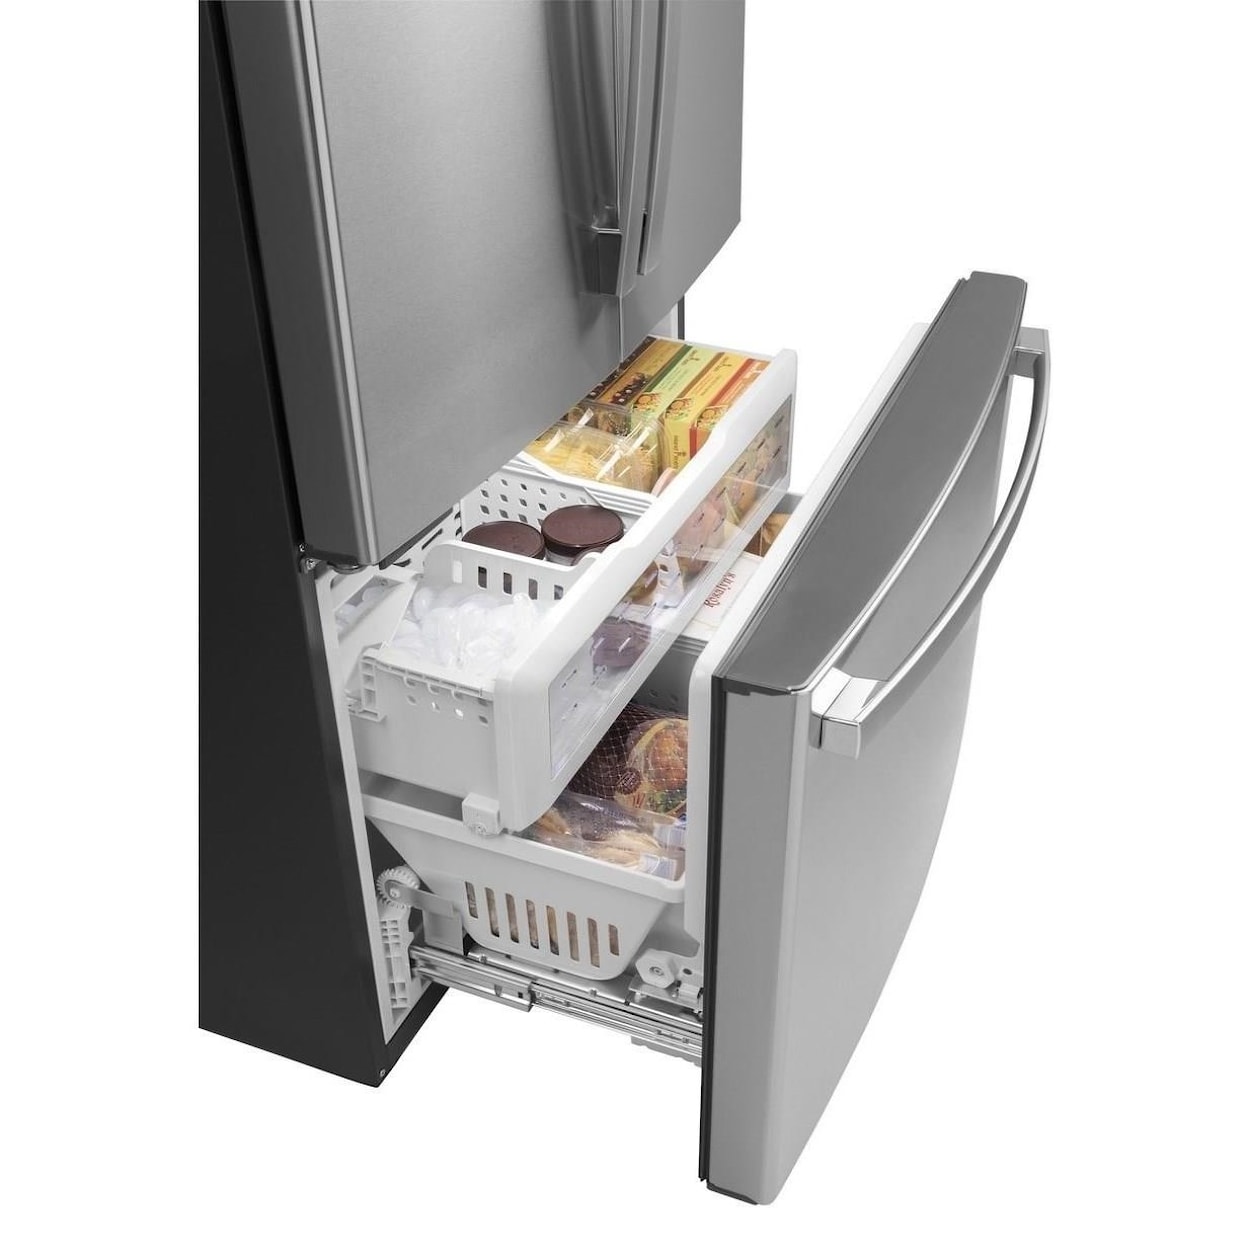 GE Appliances GE French Door Refrigerators GE® ENERGY STAR® 23.1 Cu. Ft. Counter-Depth 